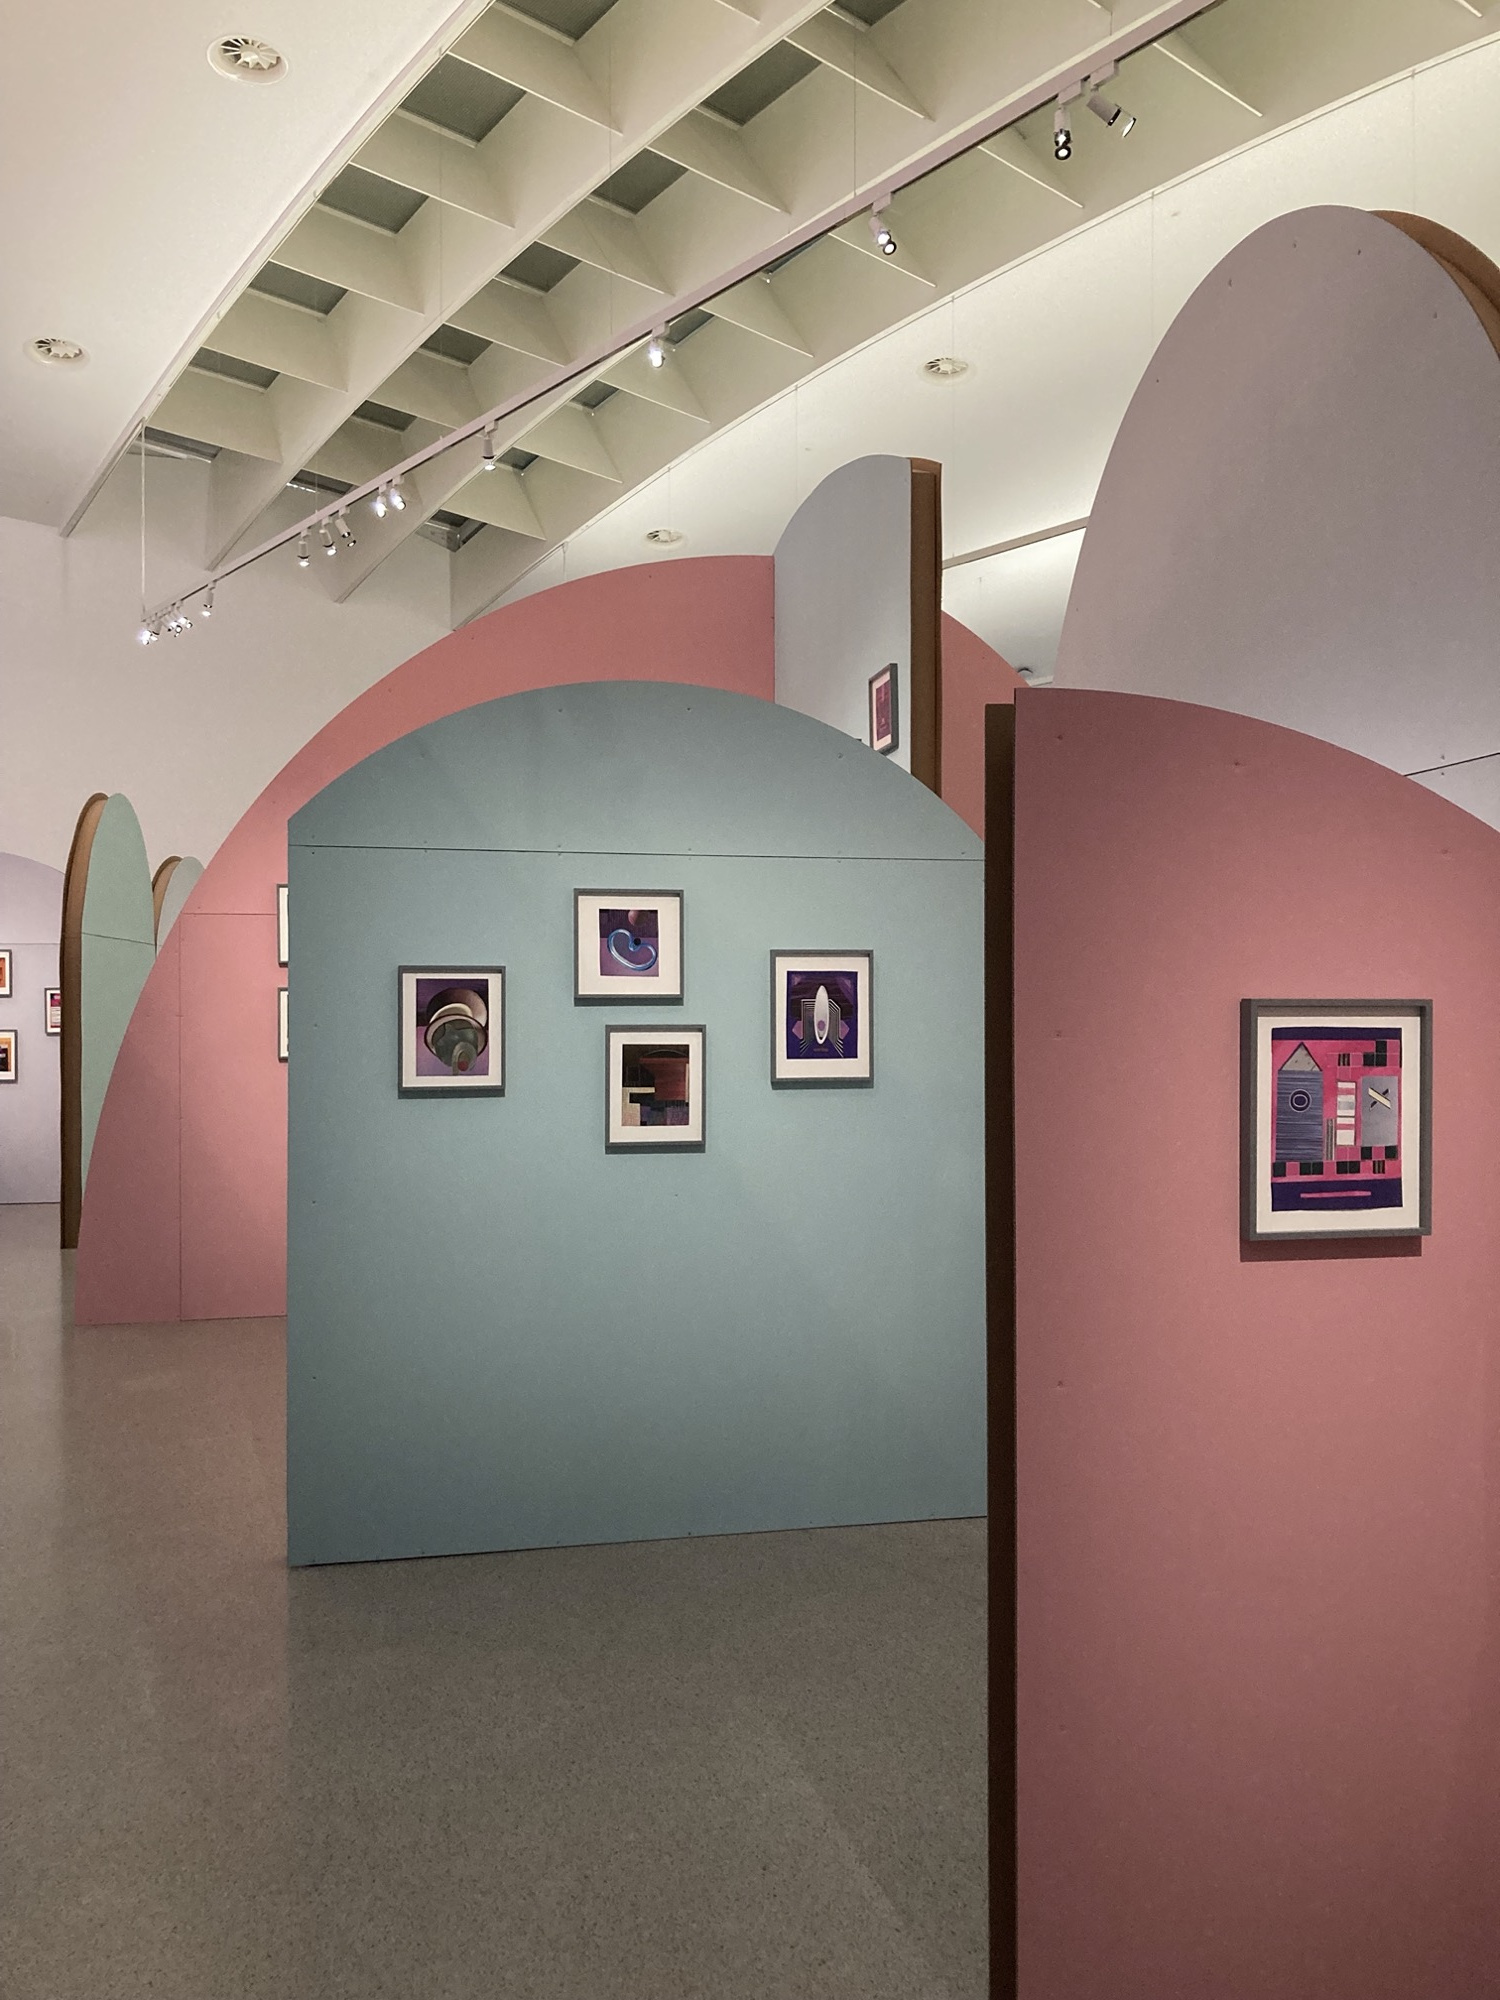 Ausstellungsräumlichkeiten im Mumok, in Pastellfarben gestrichene Wände mit runden Abschlüssen bilden Räume, an den Wänden sind jeweils einige Collagen aufgehängt, rechts vorne ist eine Collage mit pinken und violetten Elementen zu sehen, die ein geometrisches System zeigt mit einem Element, das möglicherweise eine Rakete darstellt